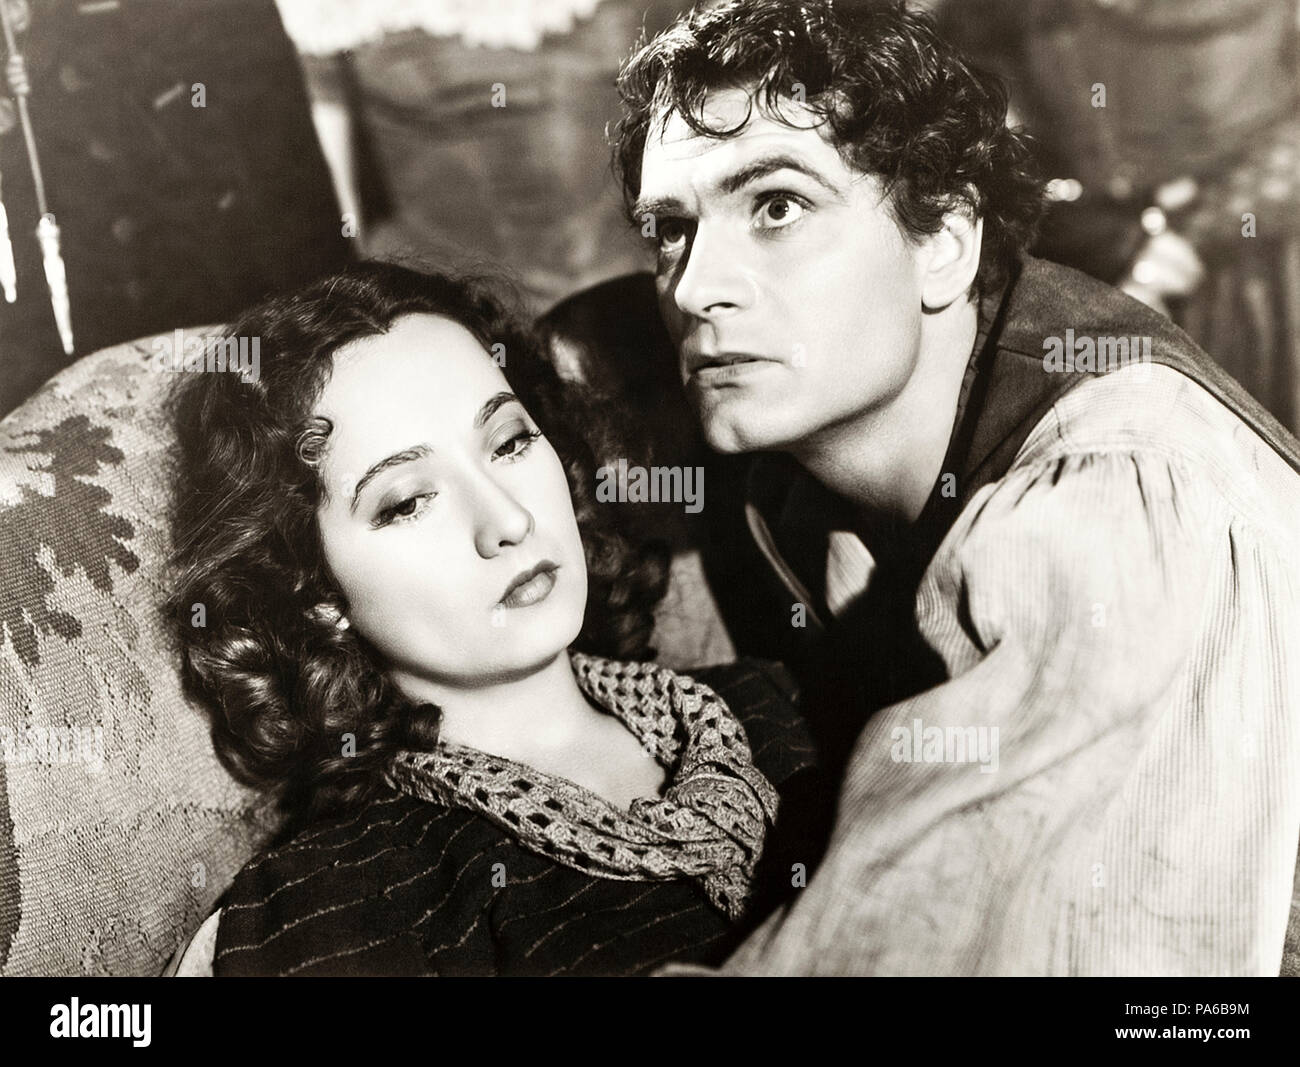 Cathy (Merle Oberon) e Heathcliff (Laurence Olivier) da Wuthering Heights (1939) diretto da William Wyler. Grande schermo l'adattamento di Emily Brontë romanzo su una sure romance. Foto Stock